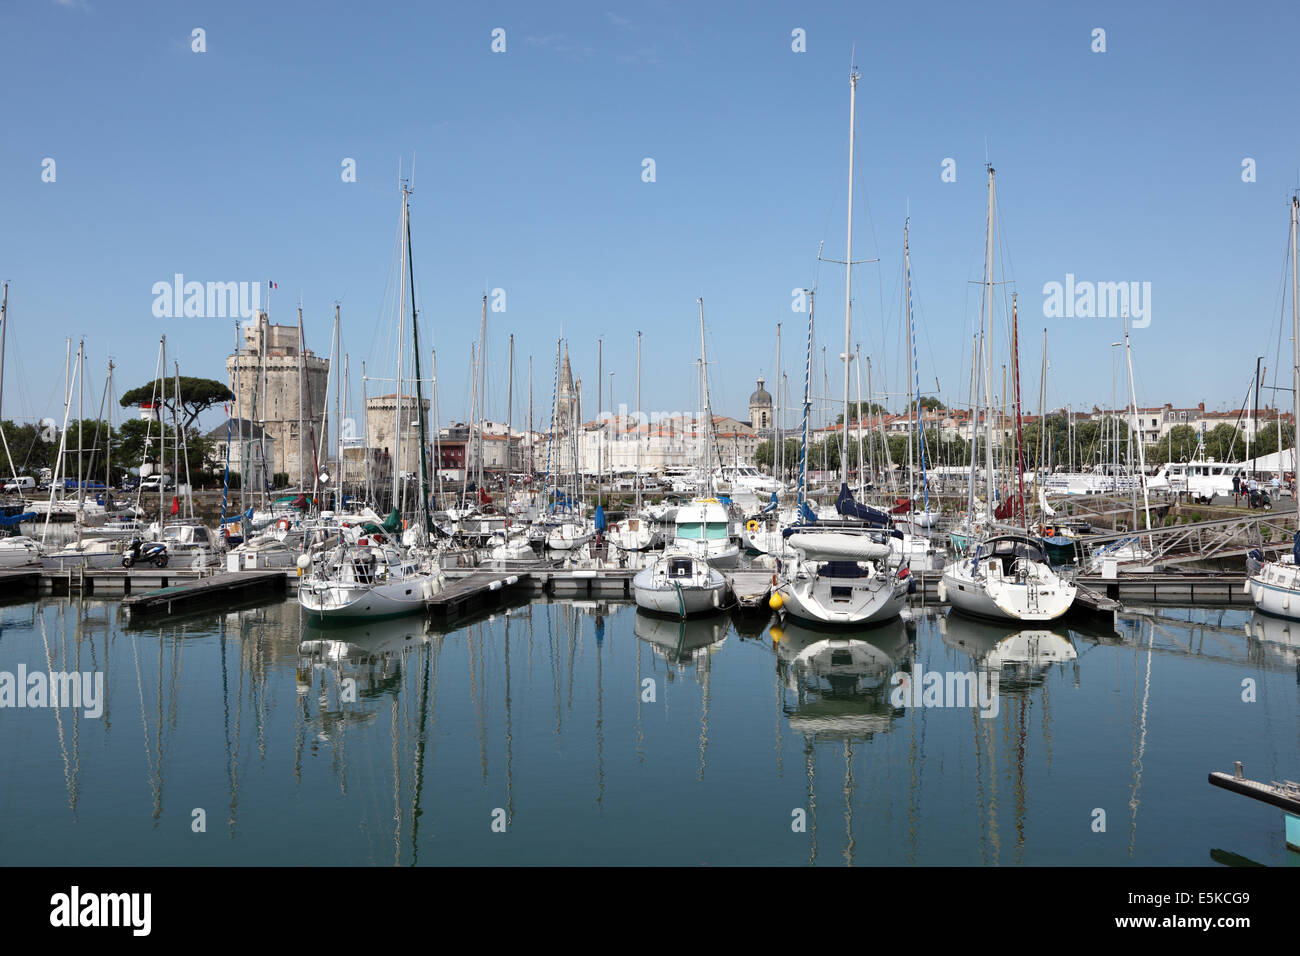 Bateaux dans le port de plaisance de La Rochelle, Charente Maritime, France Banque D'Images